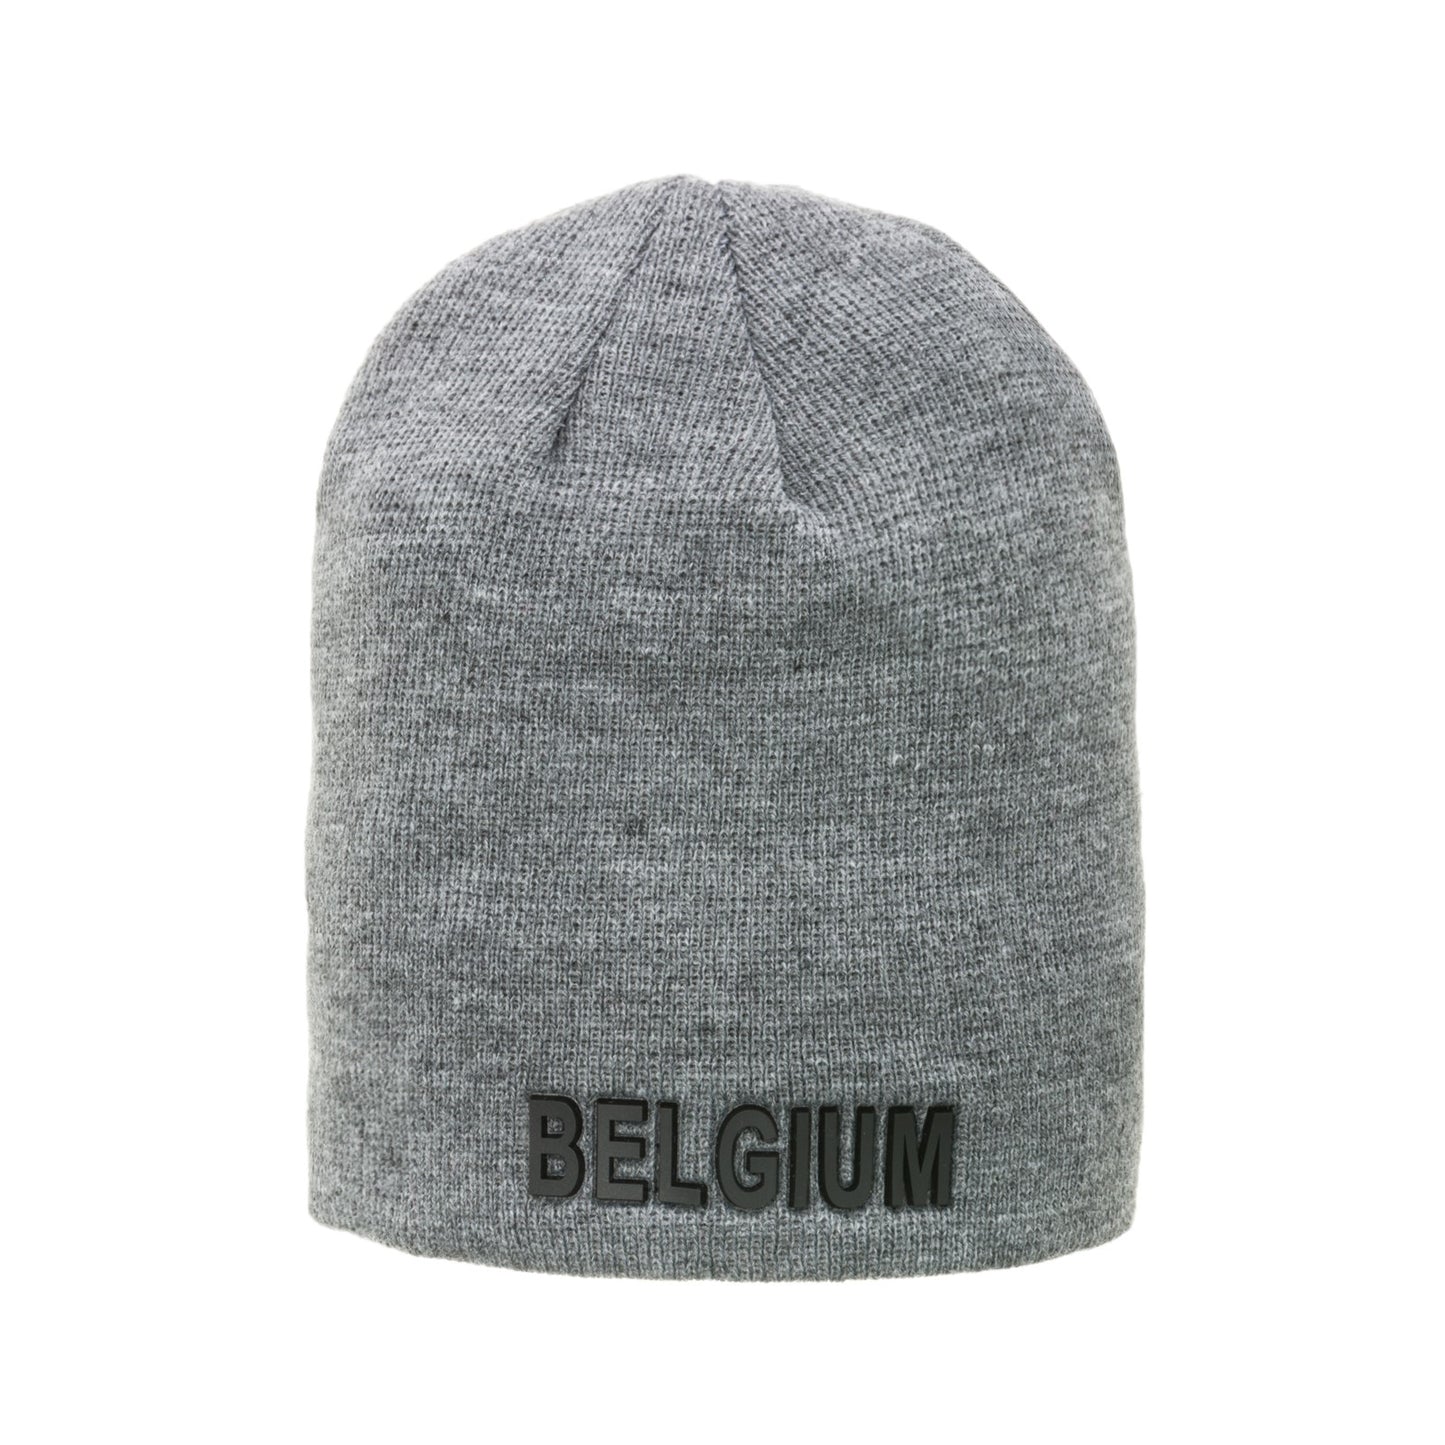 Mark - Short hat - Belgium